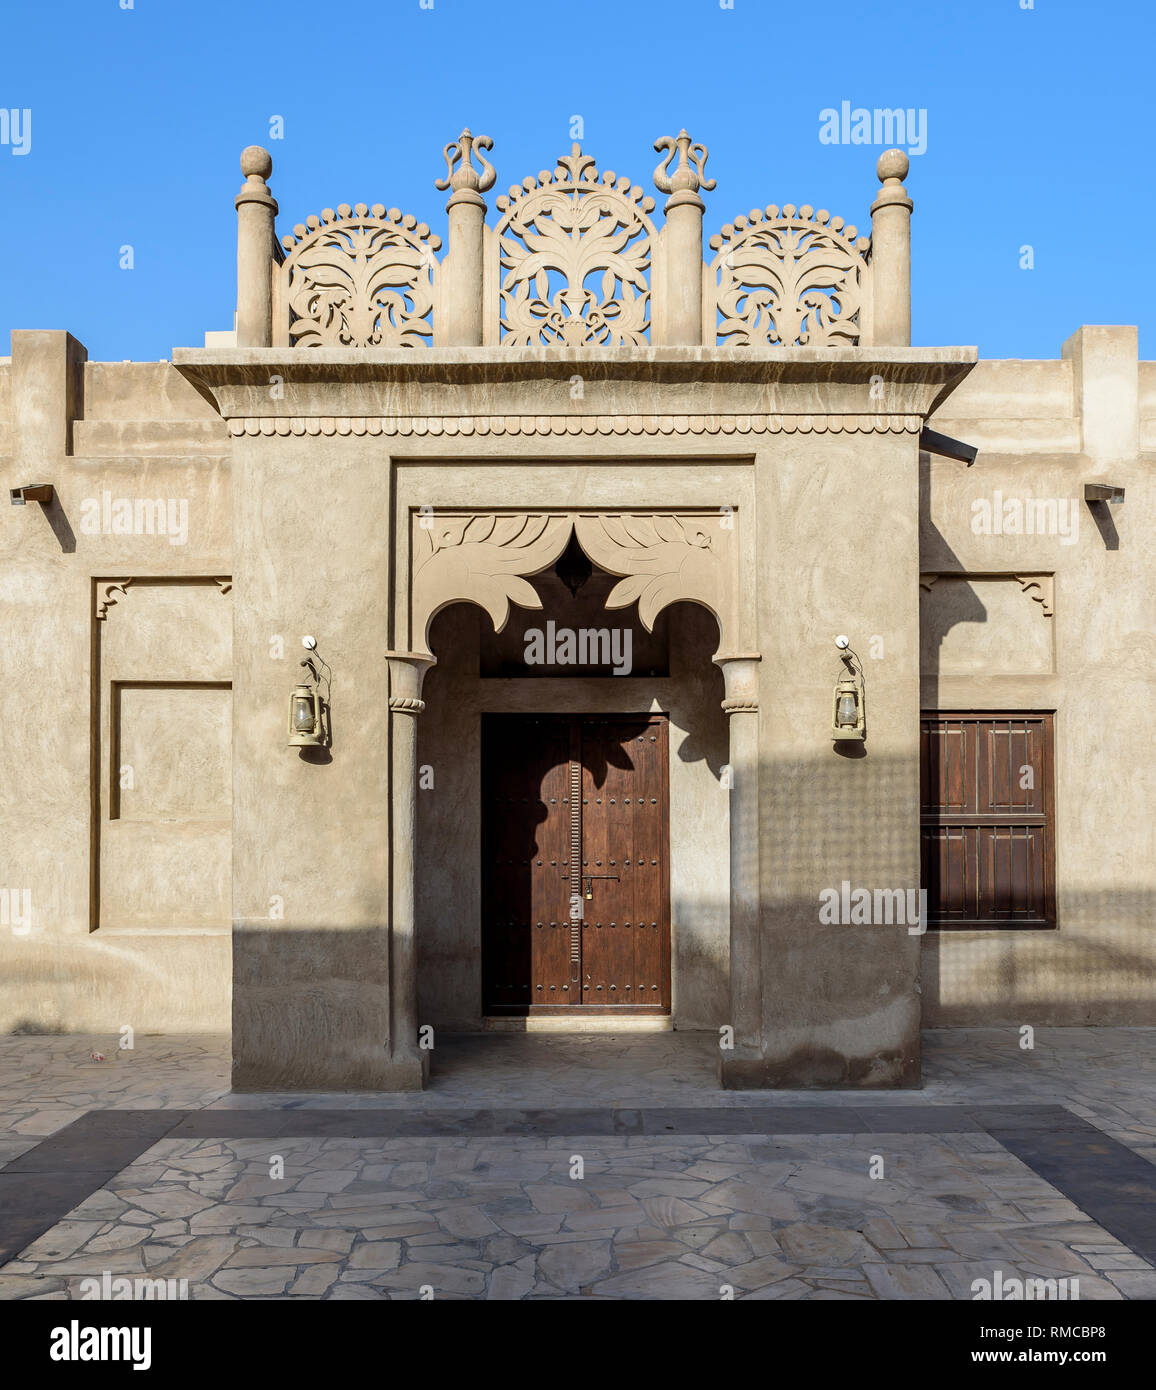 Orné, porte d'Arabie, avec des sculptures, situé dans la région de Bastikiya, vieux DUBAÏ, ÉMIRATS ARABES UNIS Banque D'Images